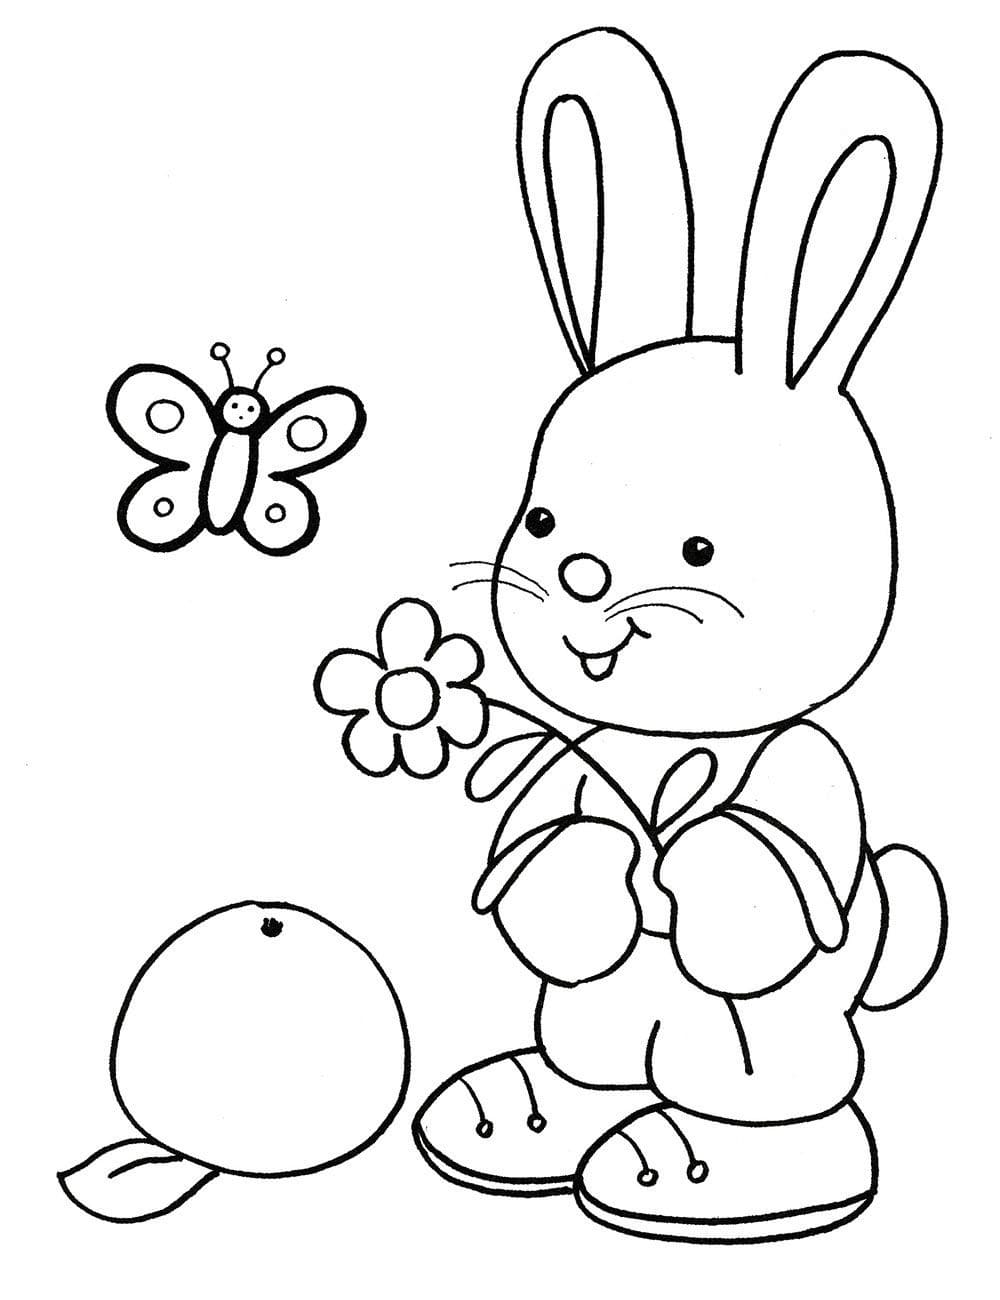 Dibujos para colorear para niños de 5 años. Imprimir gratis